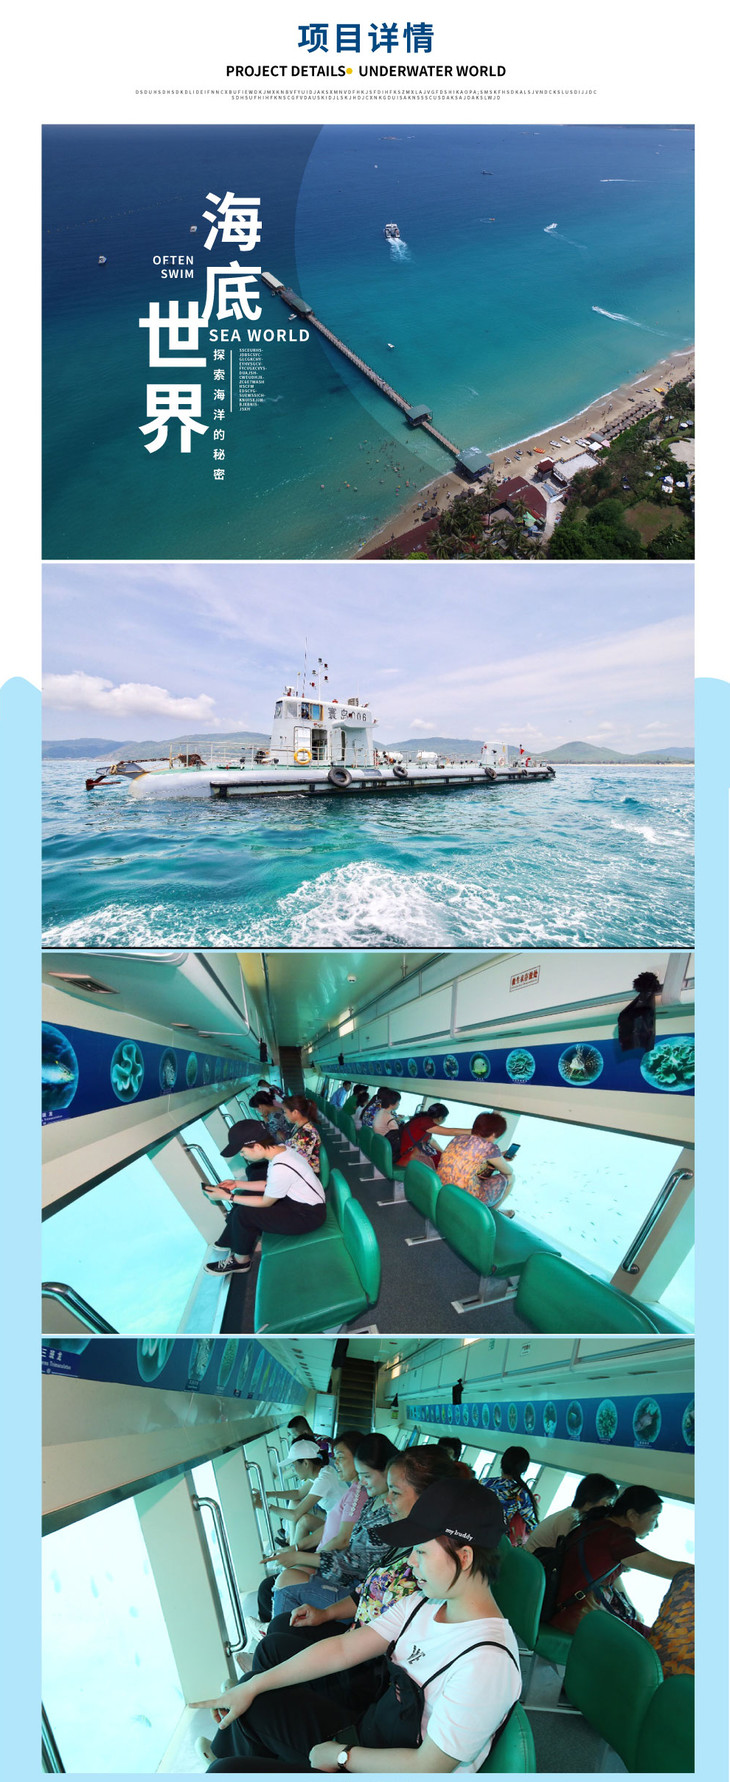 【半潜 快艇】亚龙湾海底世界 半潜观光船 沙滩快艇 套票